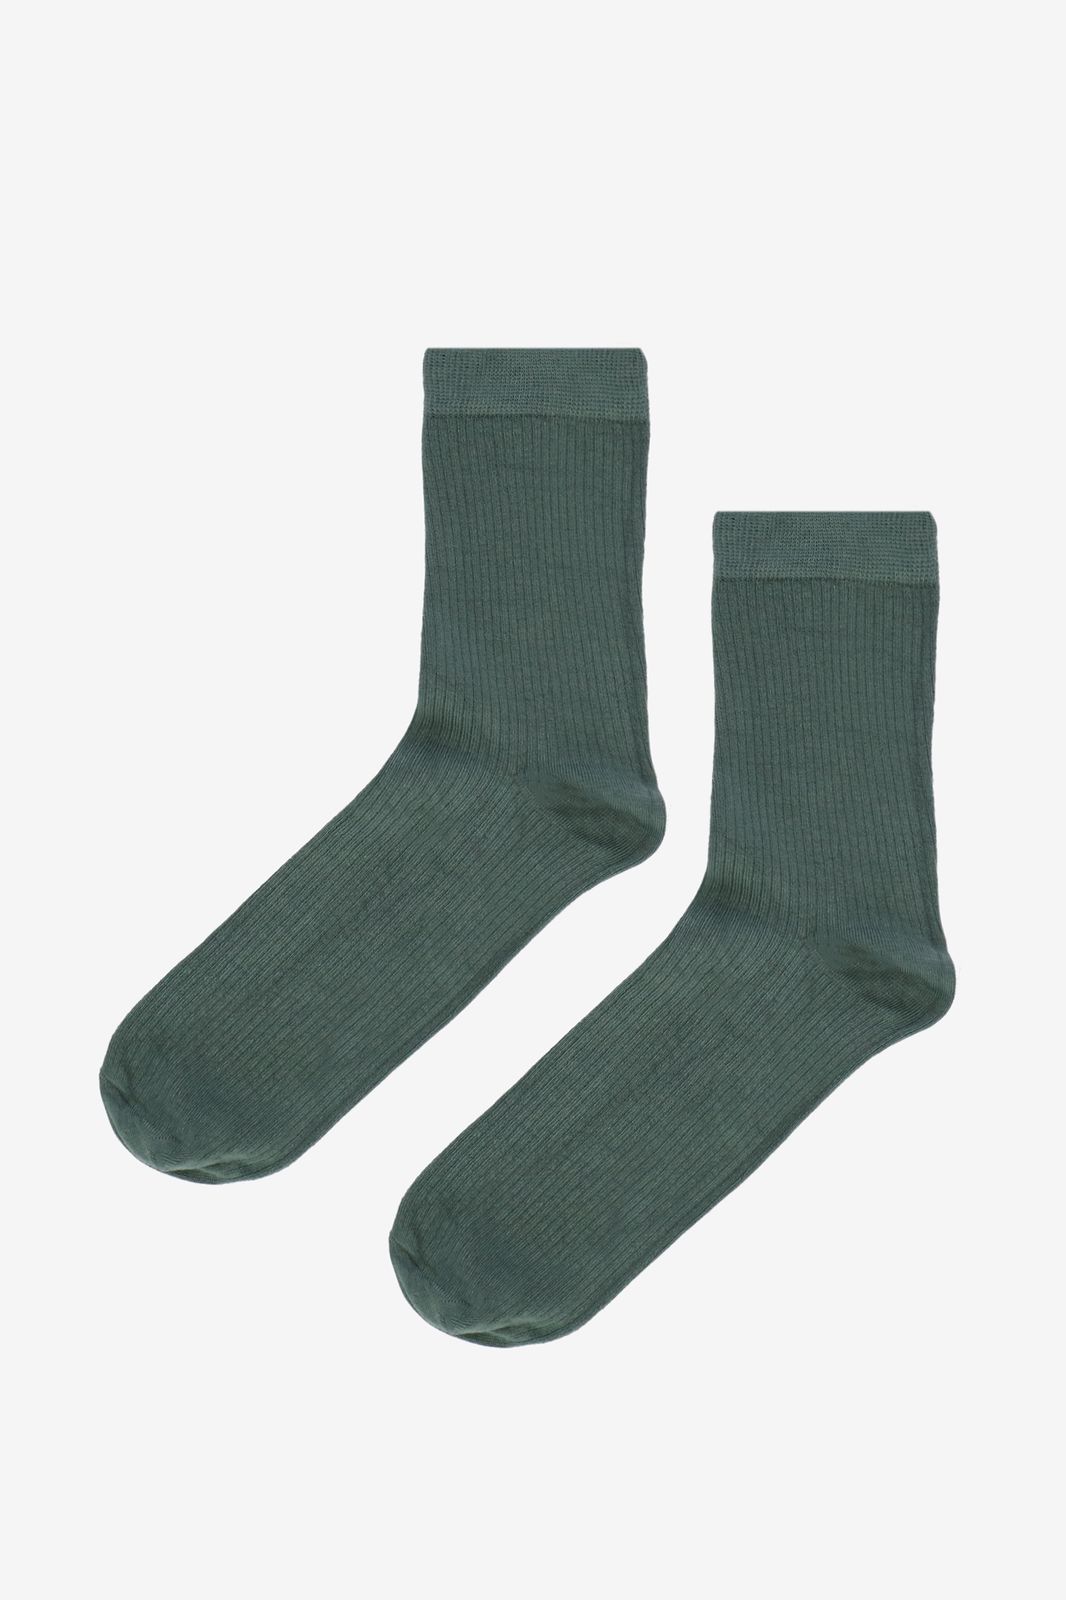 Socken mit Rippmuster - dunkelgrün